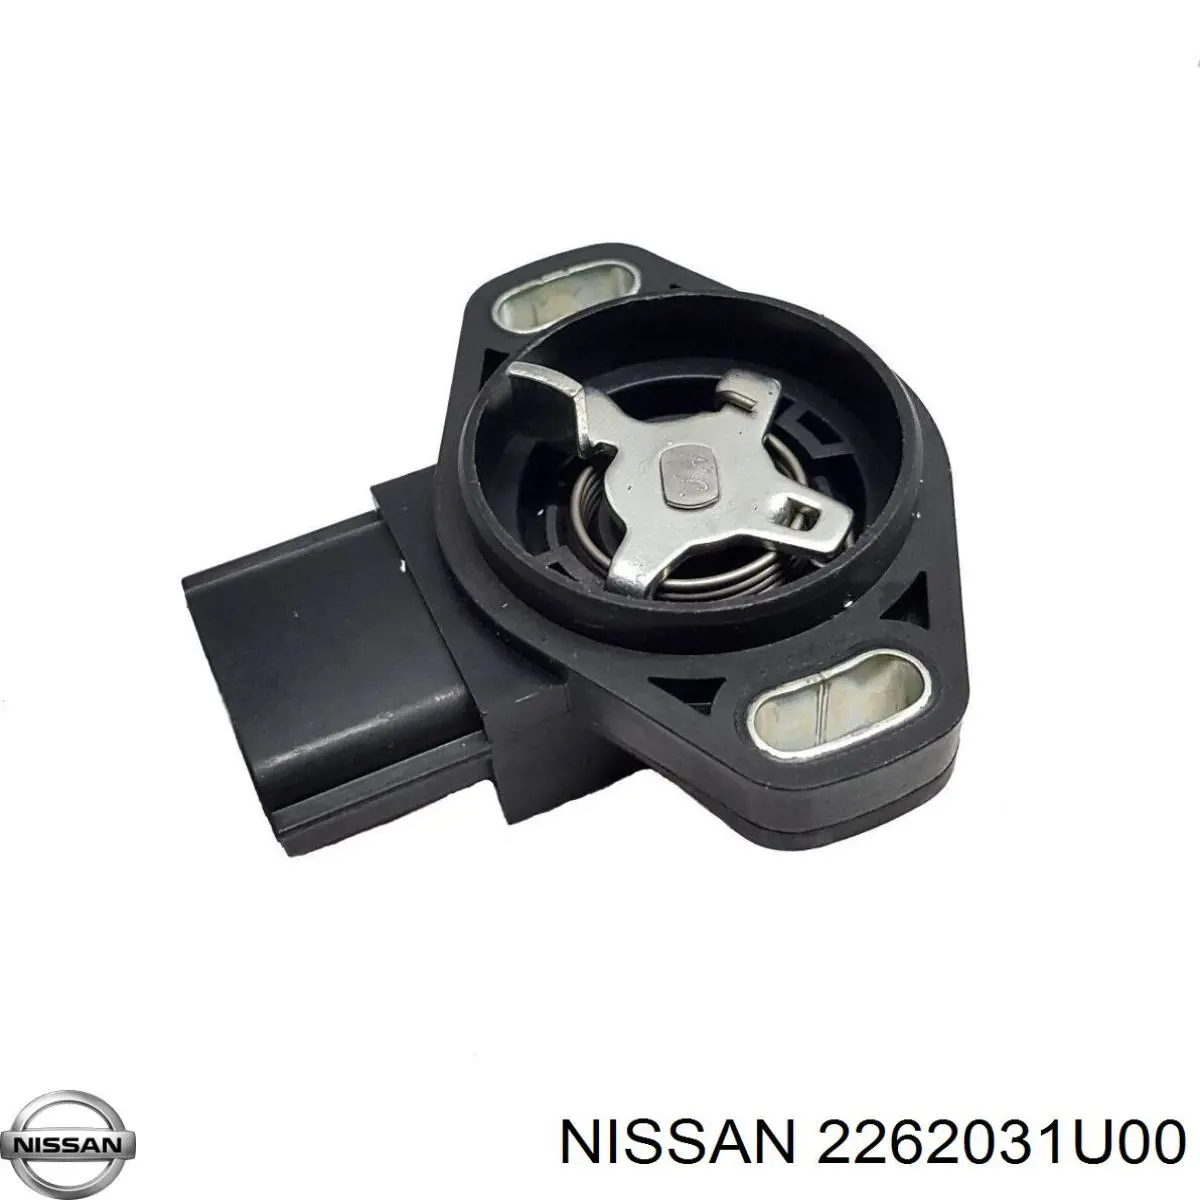 2262031U00 Nissan датчик положения дроссельной заслонки (потенциометр)